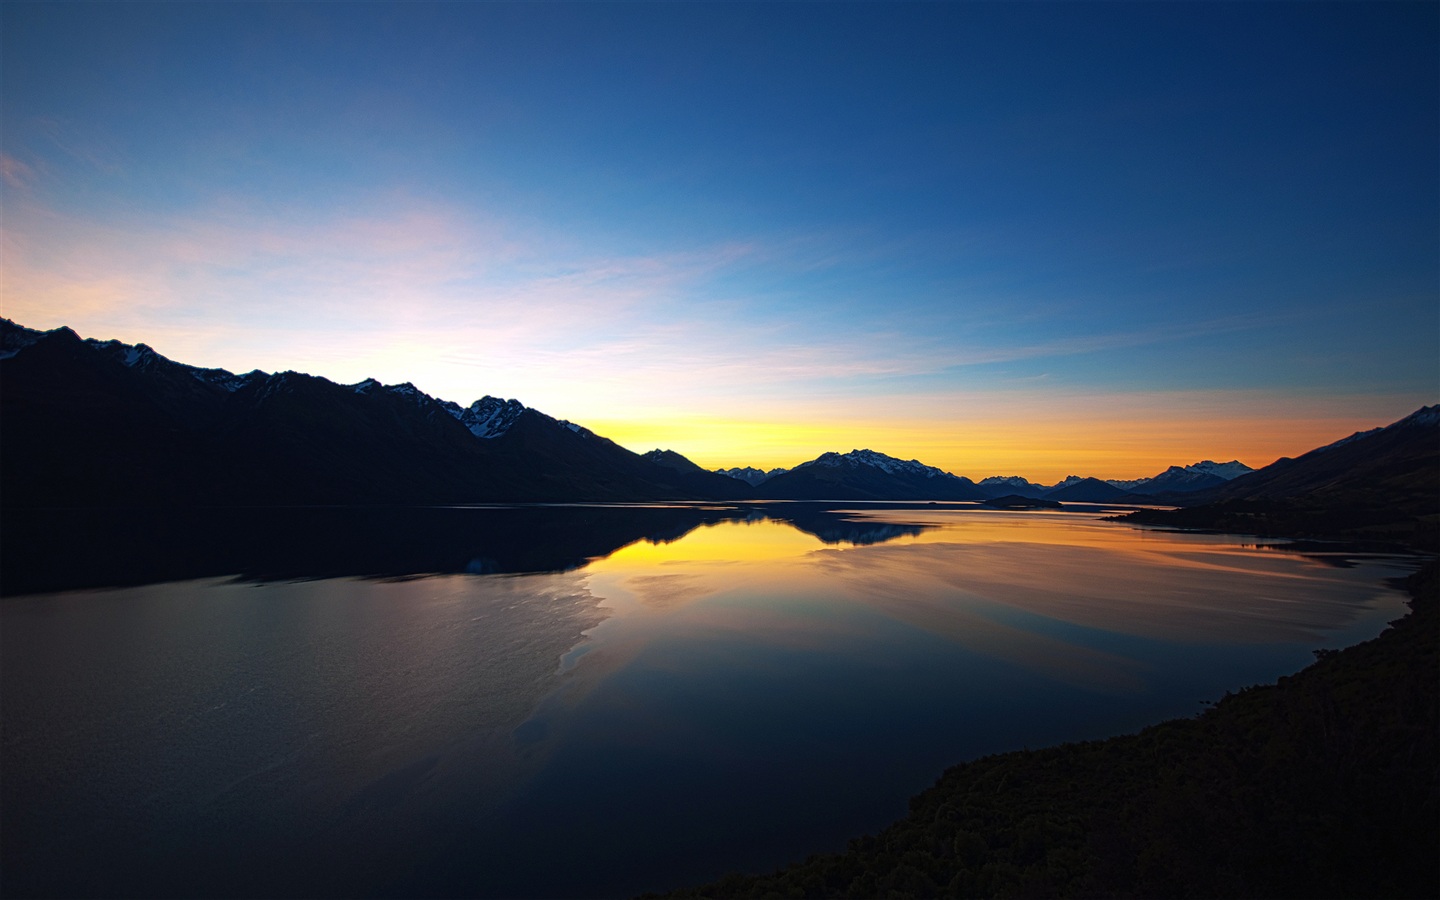 New Zealand Beautiful Nature Scenery Sunset S Of Lake And Mountain